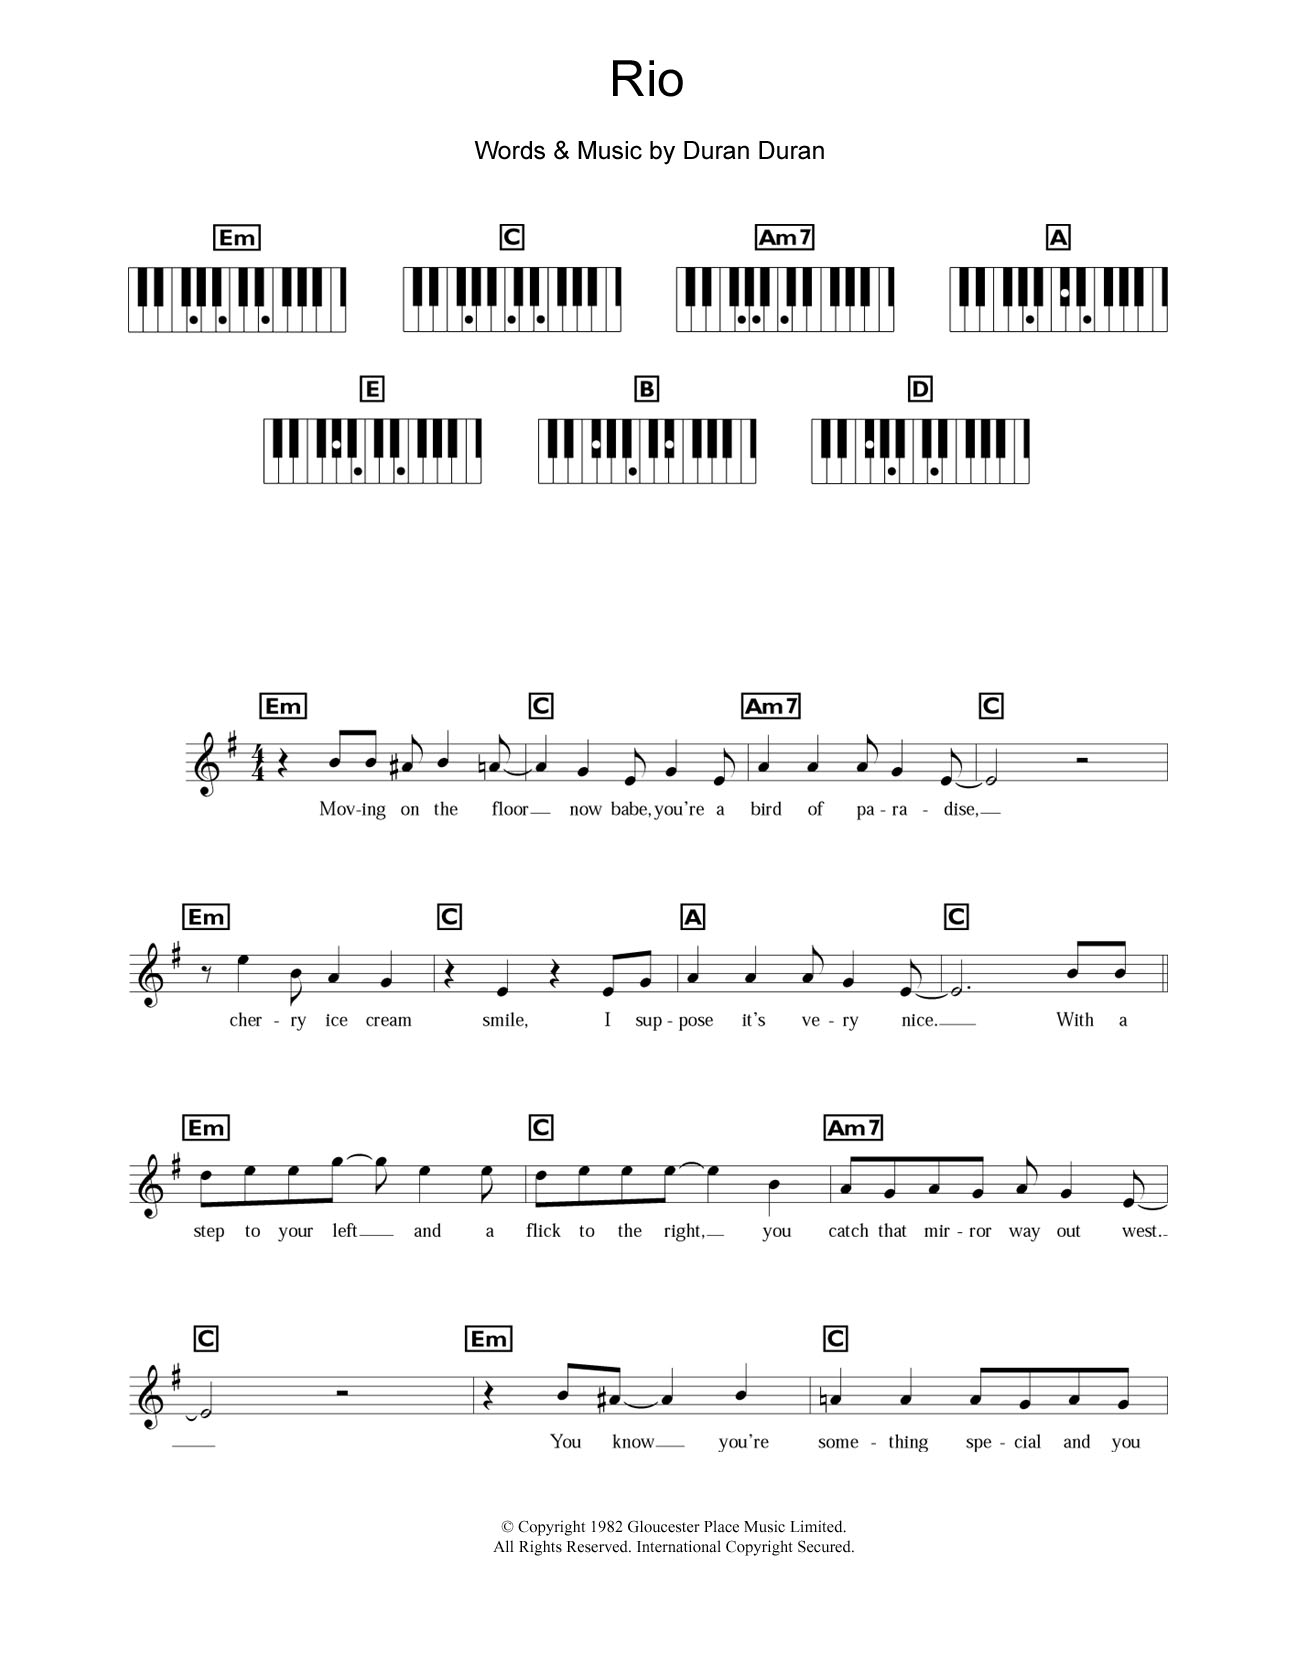 Duran Duran Rio Sheet Music Notes & Chords for Keyboard - Download or Print PDF